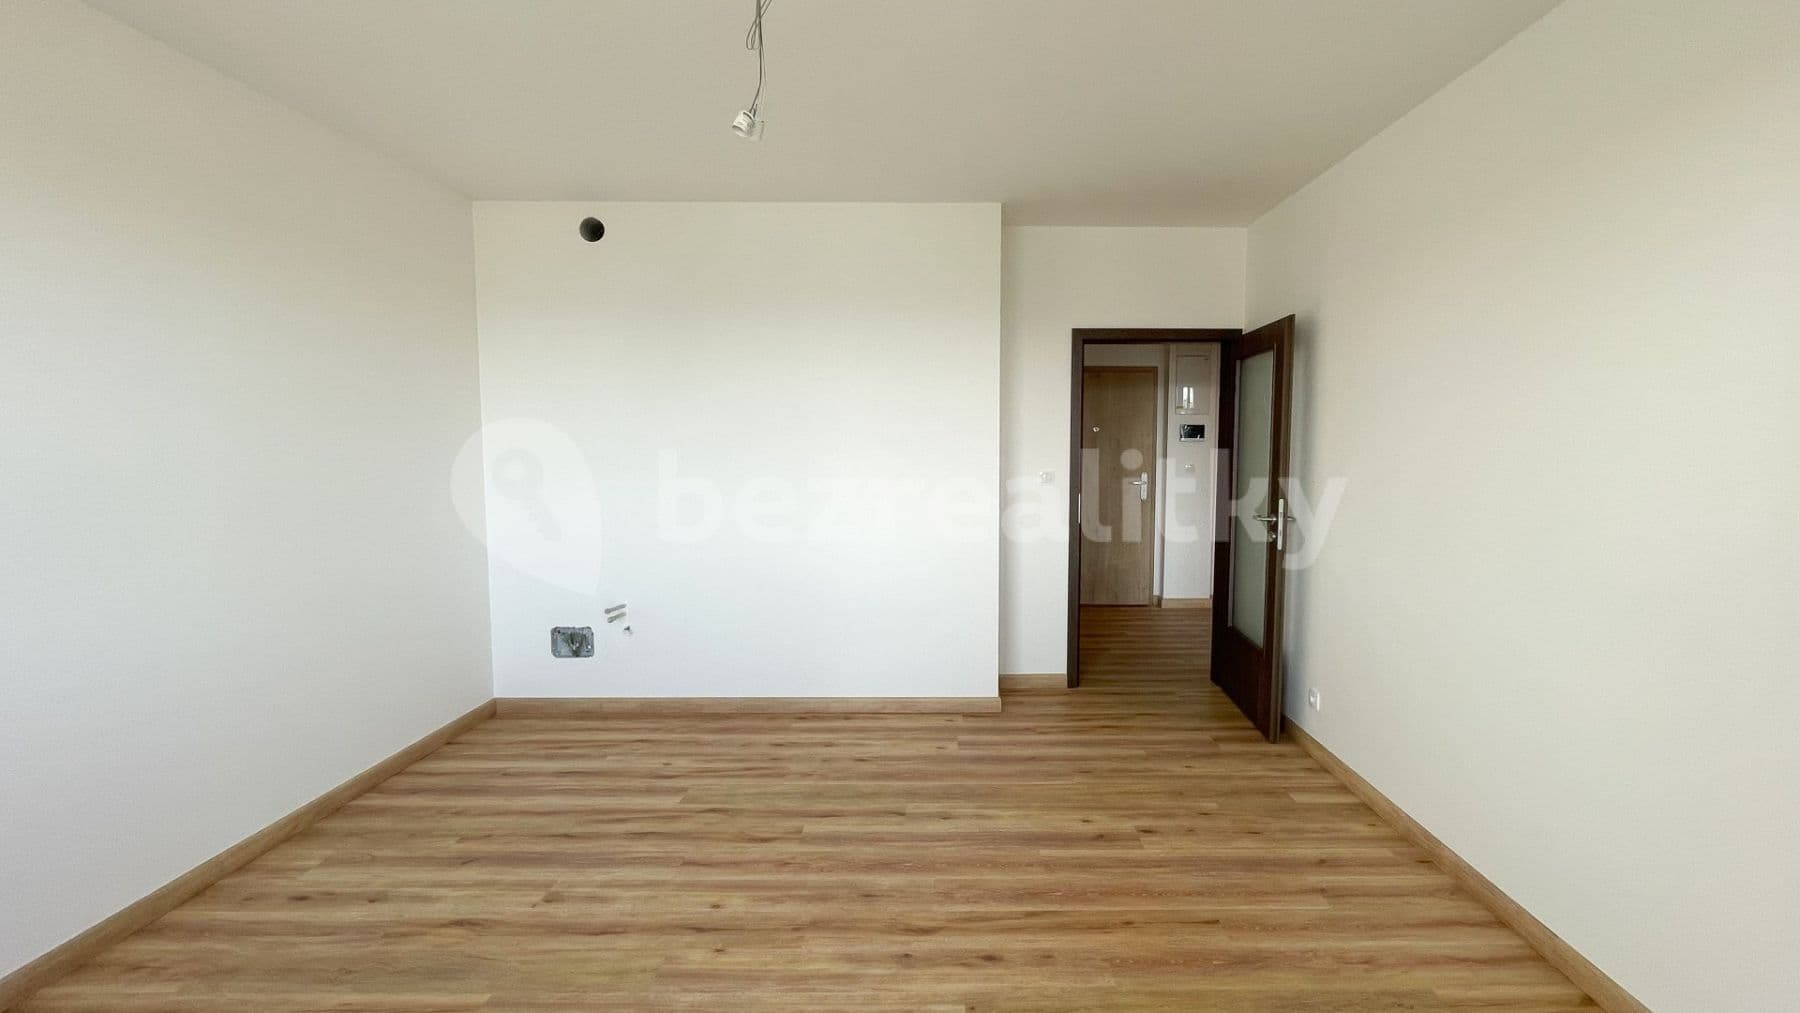 1 bedroom with open-plan kitchen flat for sale, 60 m², České Vrbné, České Budějovice, Jihočeský Region